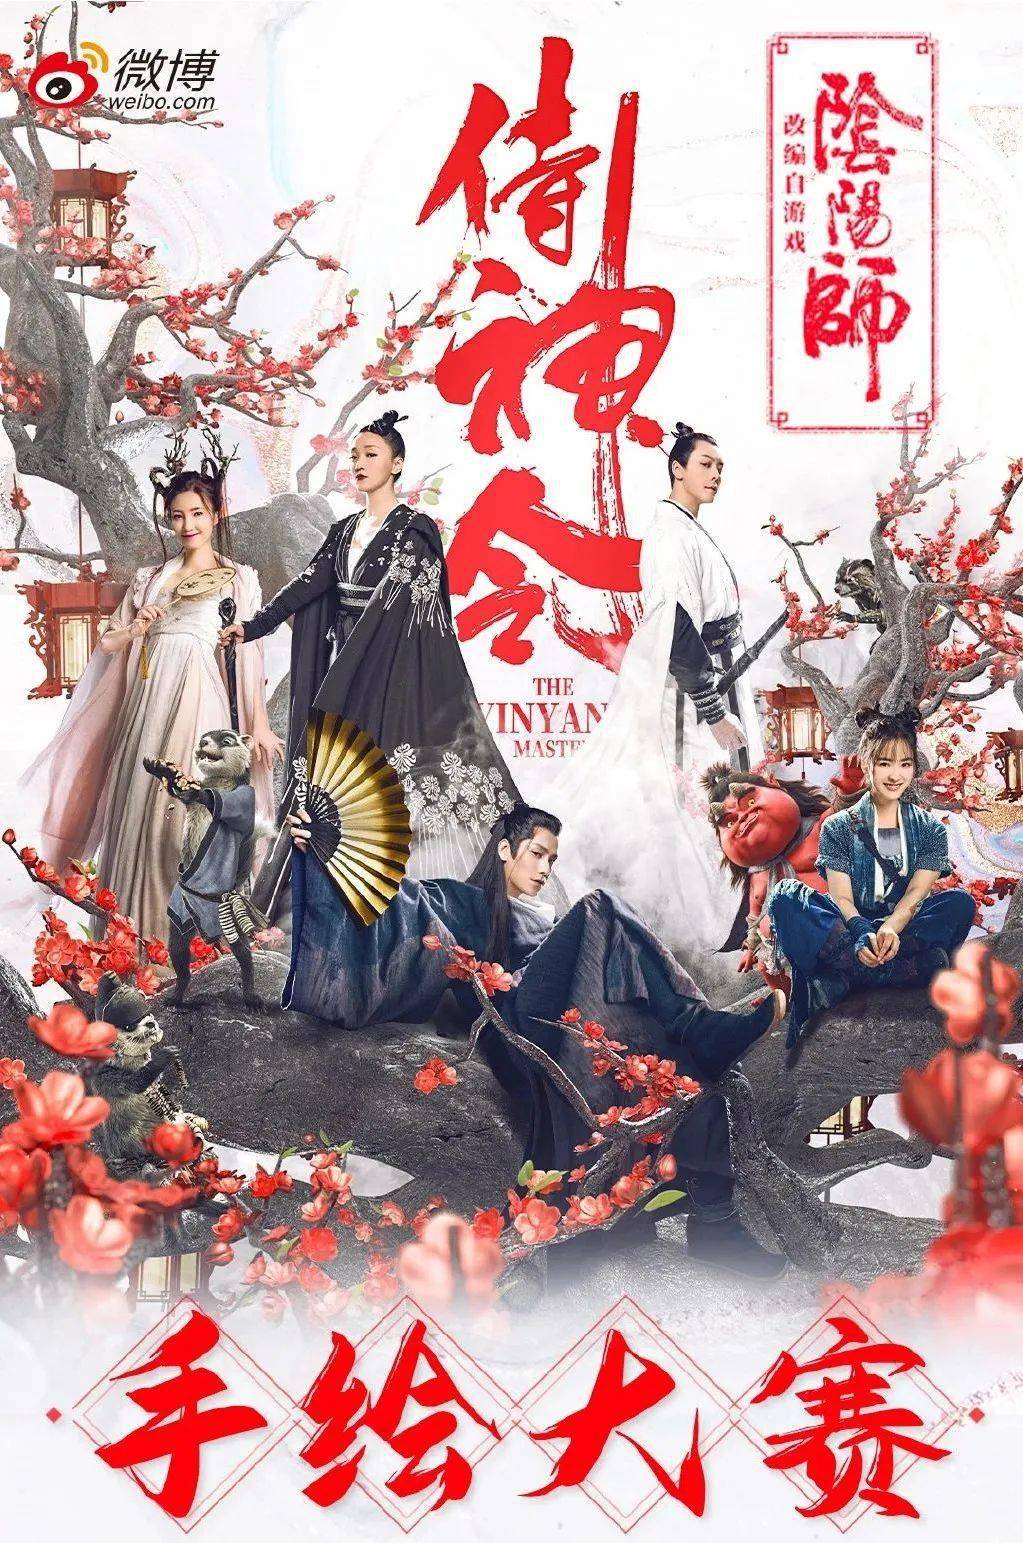 周迅陈坤的《侍神令》,中国风海报设计太美了!